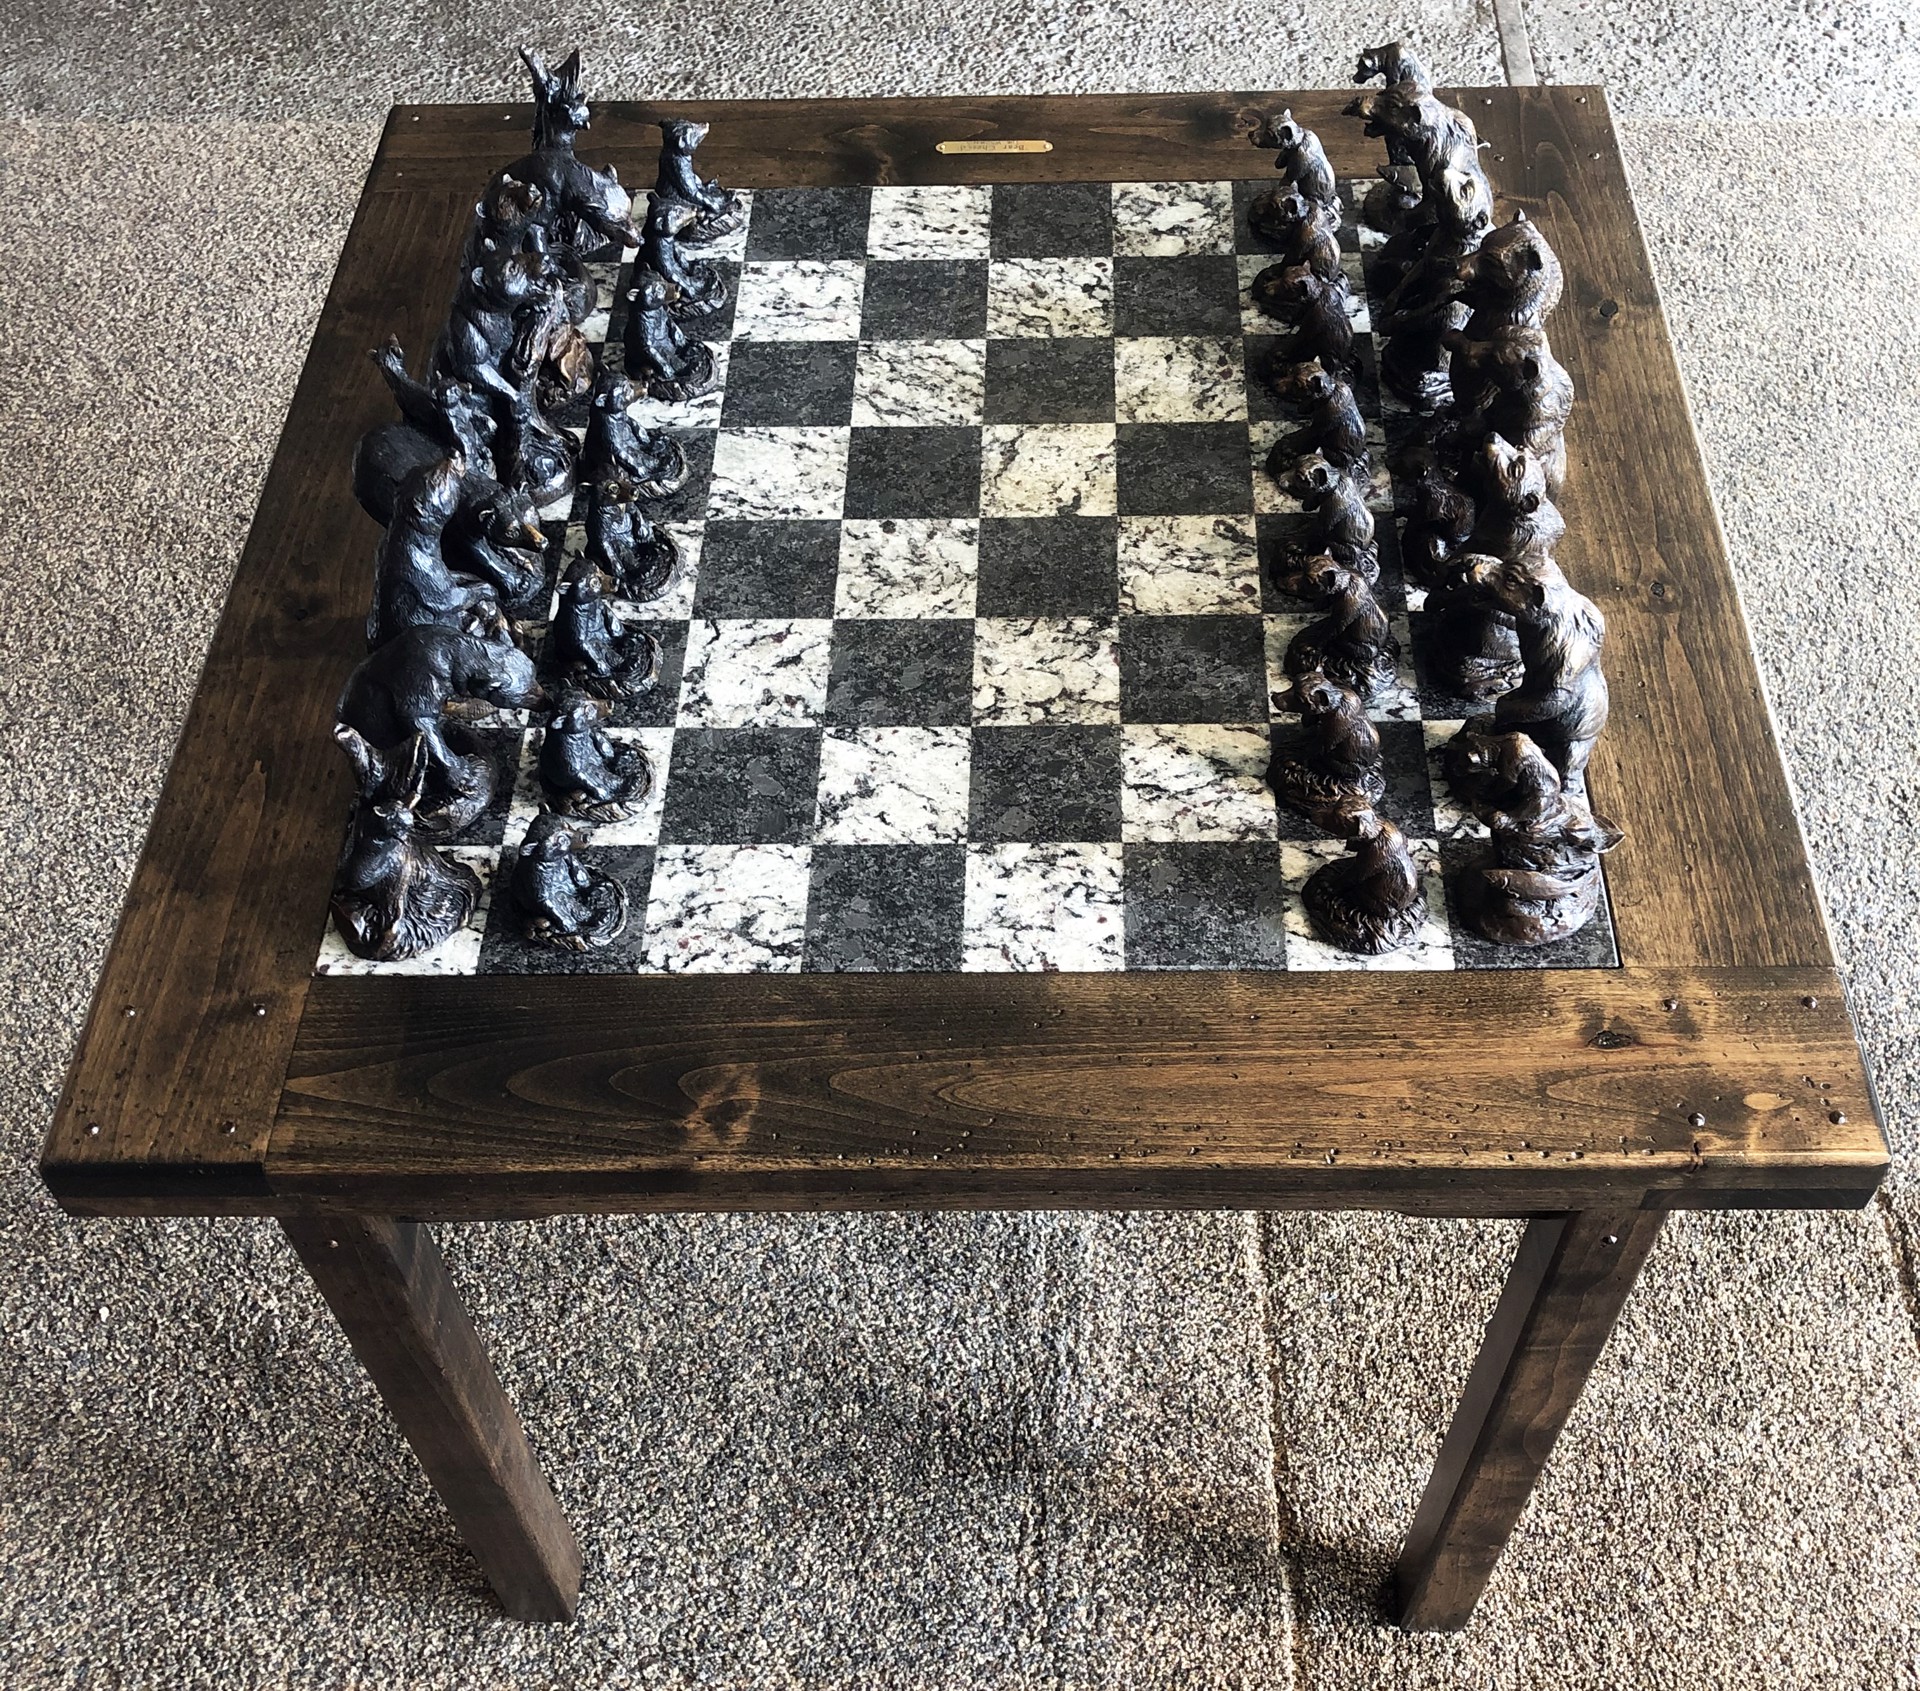 Bear Chess'd by Tim Whitworth